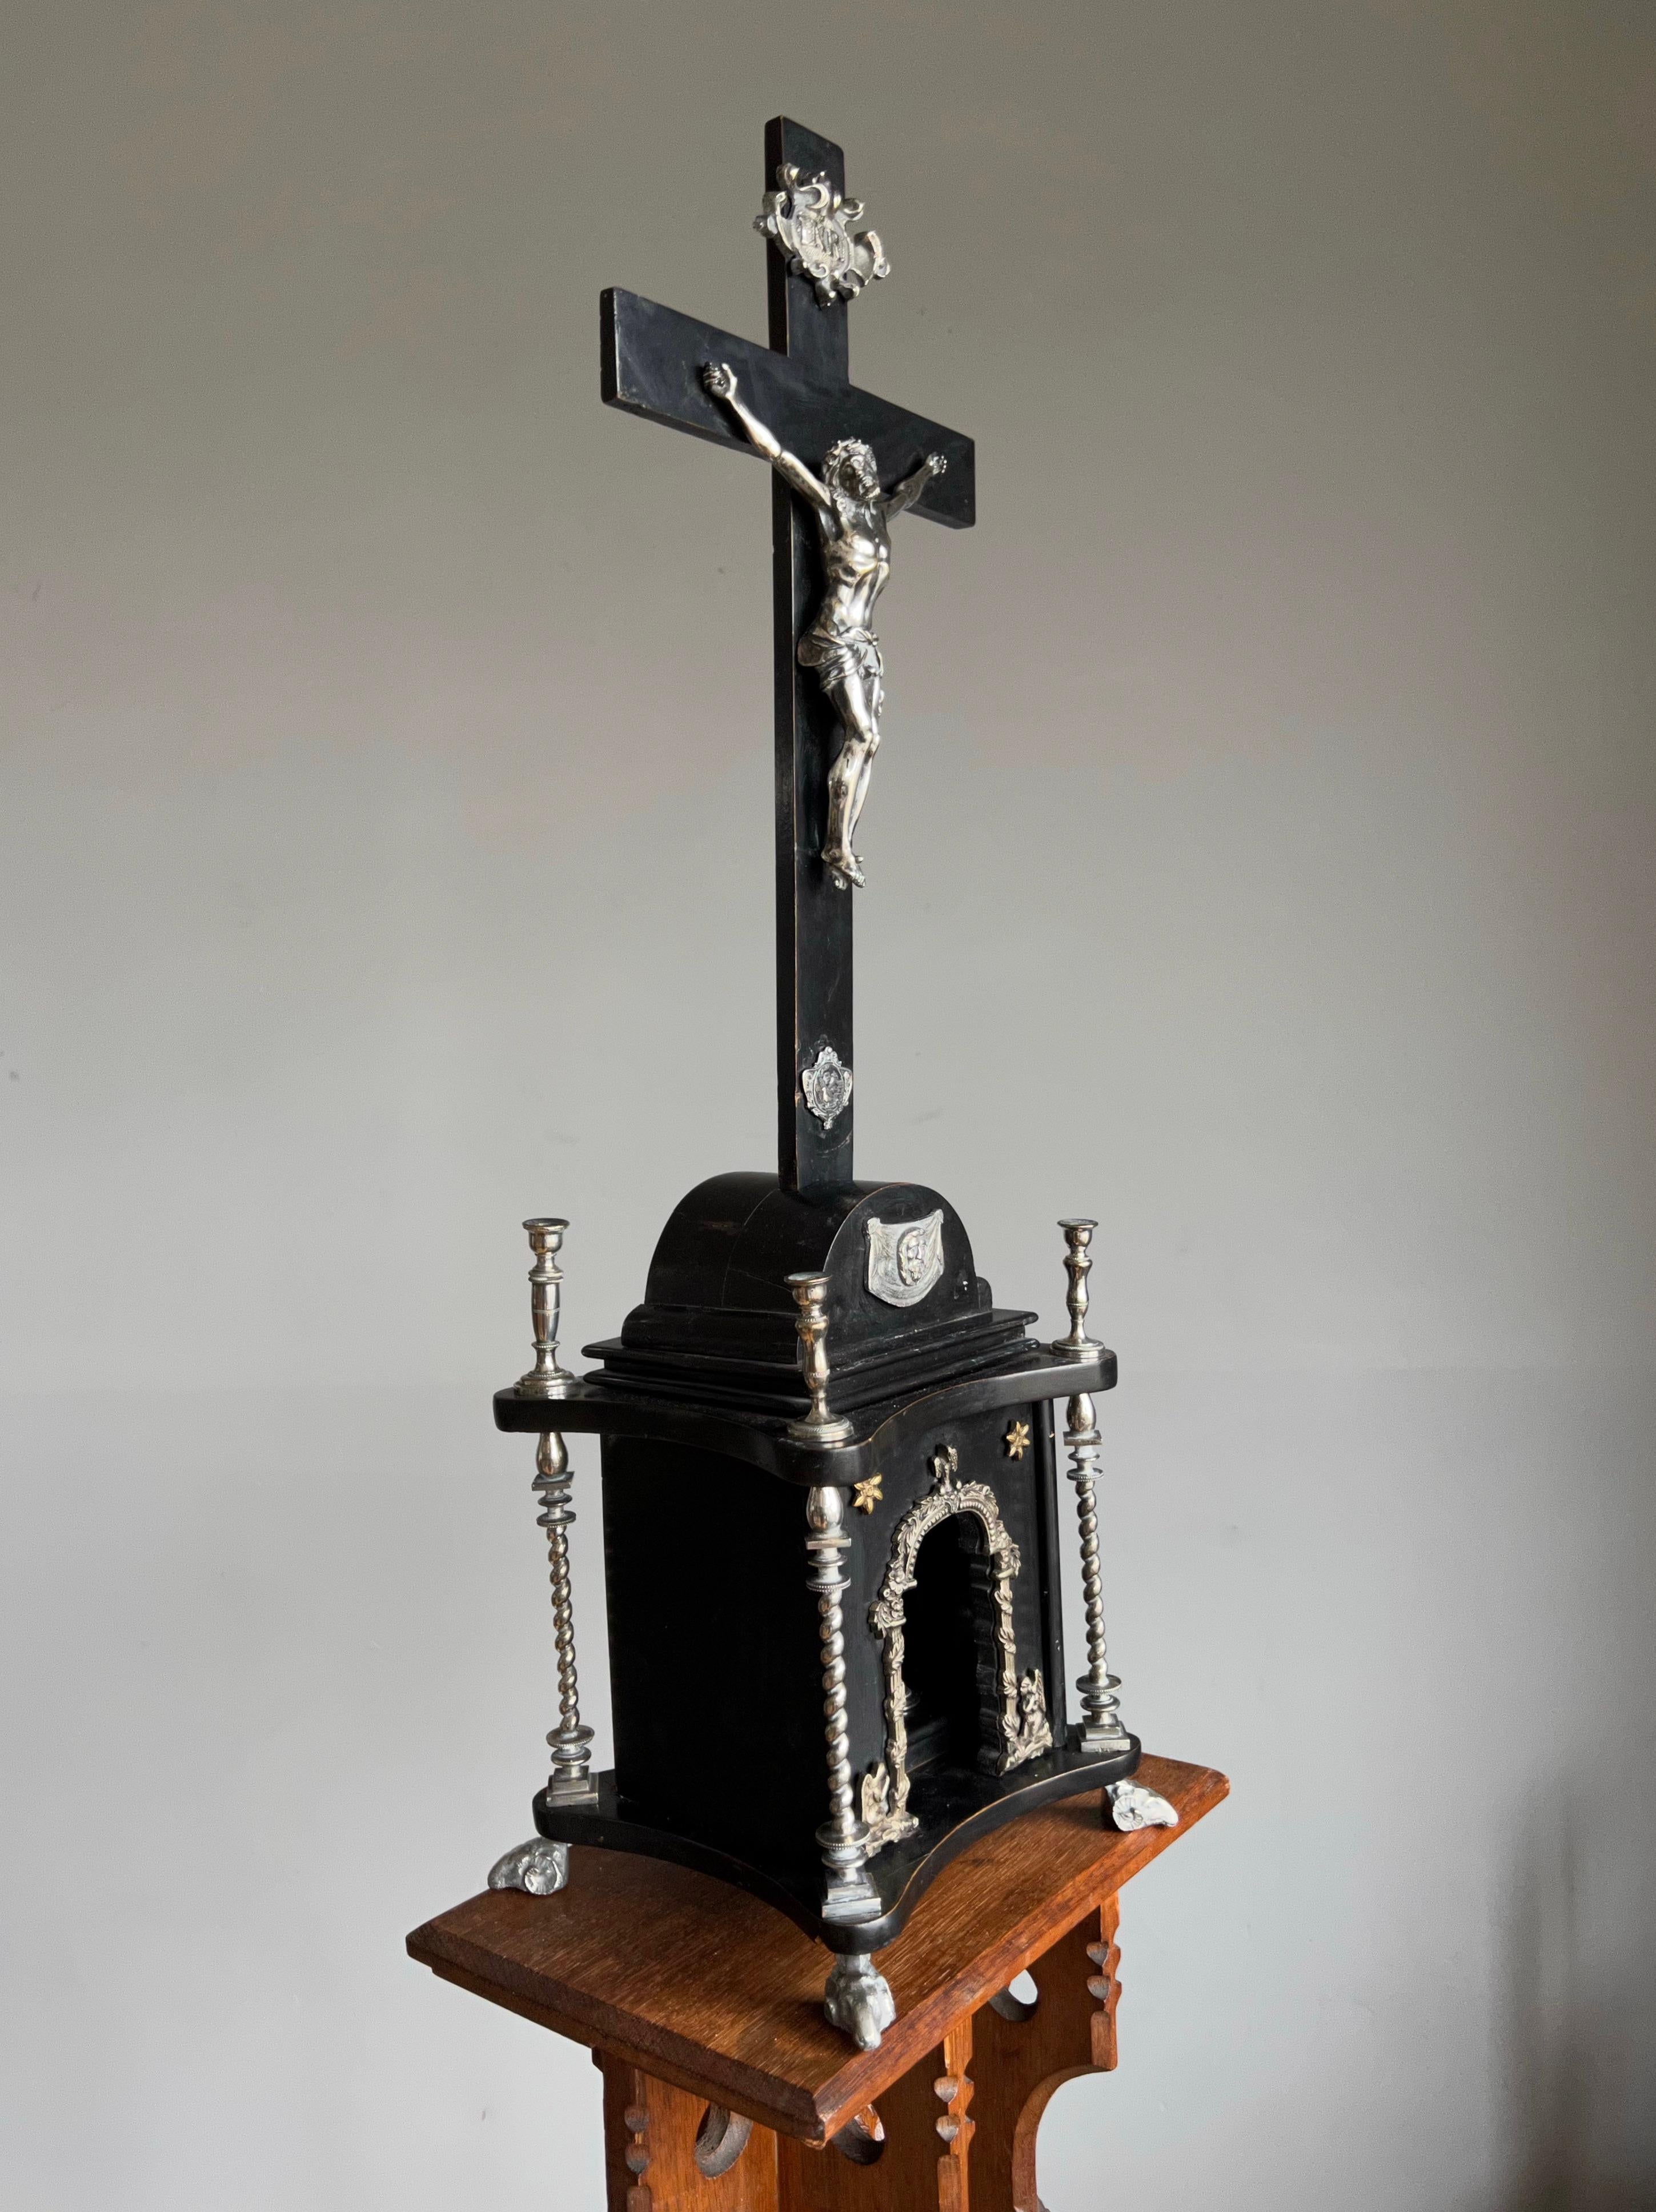 Crucifix de table unique et merveilleuse œuvre d'art religieux.

Pour nous, la déclaration la plus puissante sera toujours 